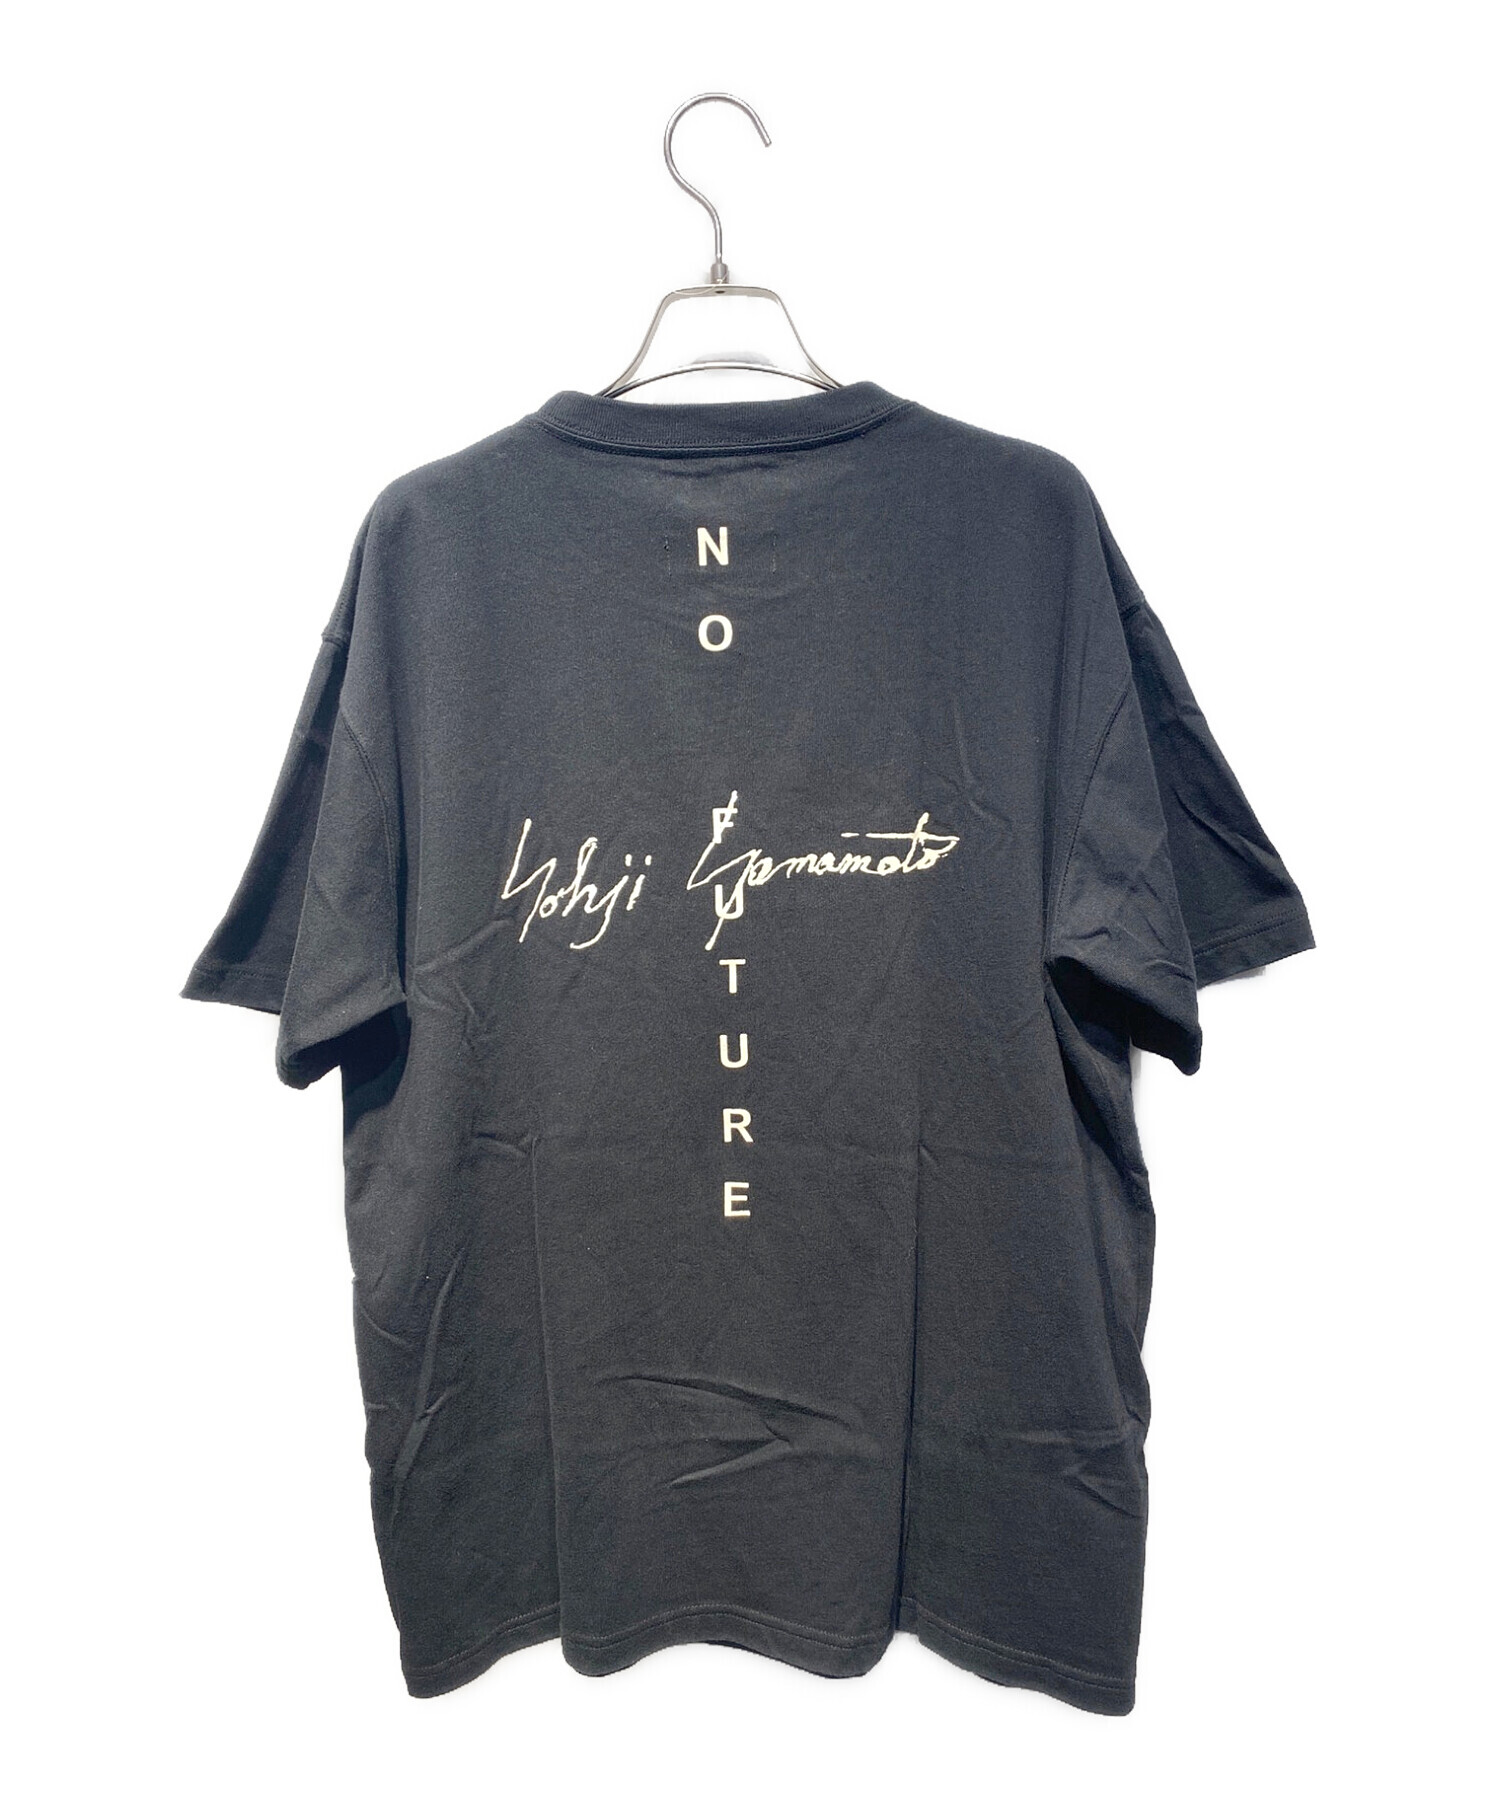 yohji yamamoto newera Tシャツ